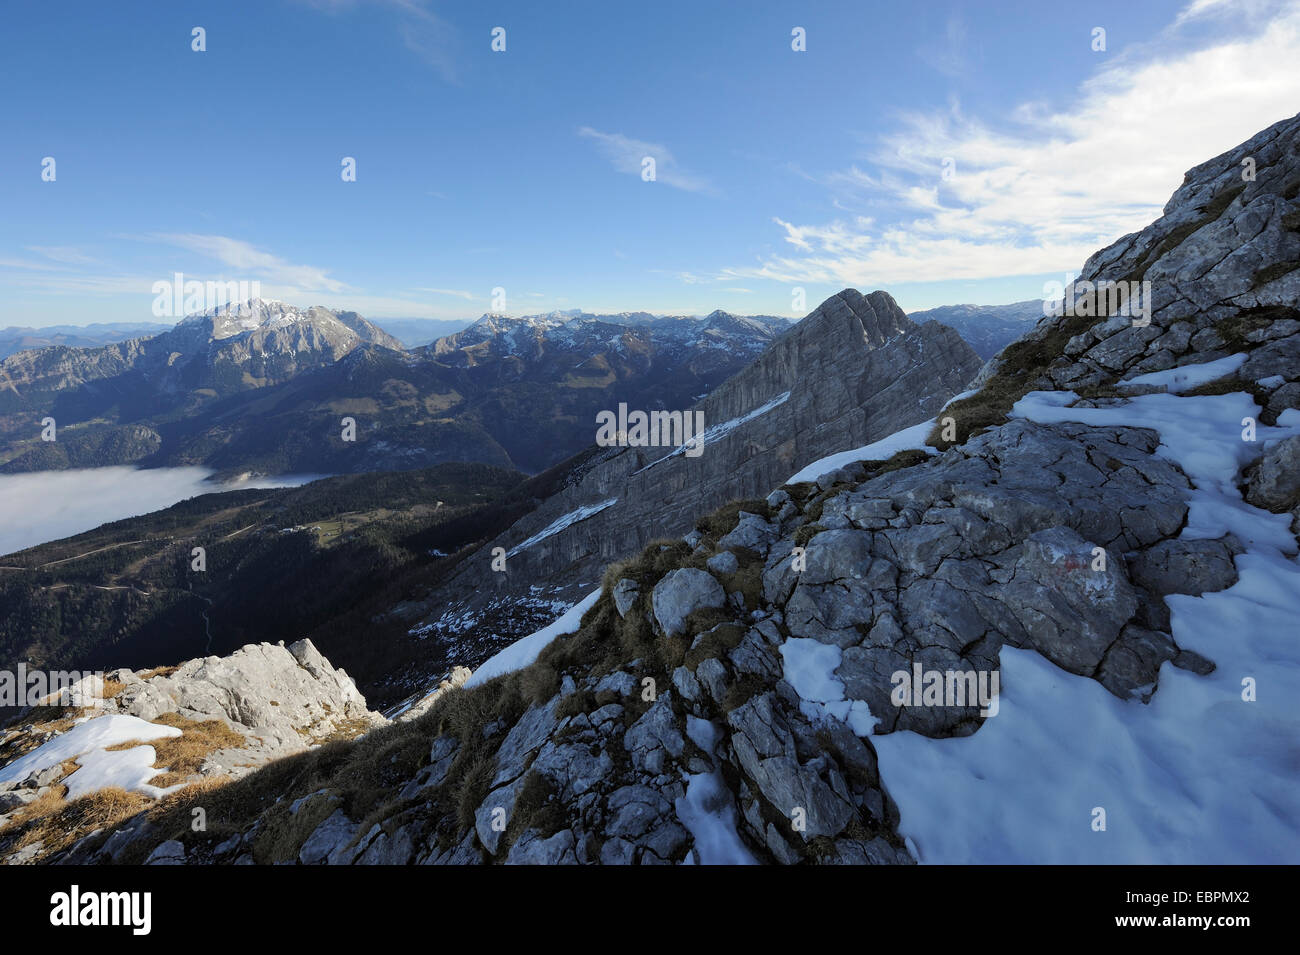 Anzeigen des Berges kleinen Watzmann oder Watzmann Frau und Tal bedeckt mit Hochnebel, Ramsau, Berchtesgaden, Deutschland Stockfoto